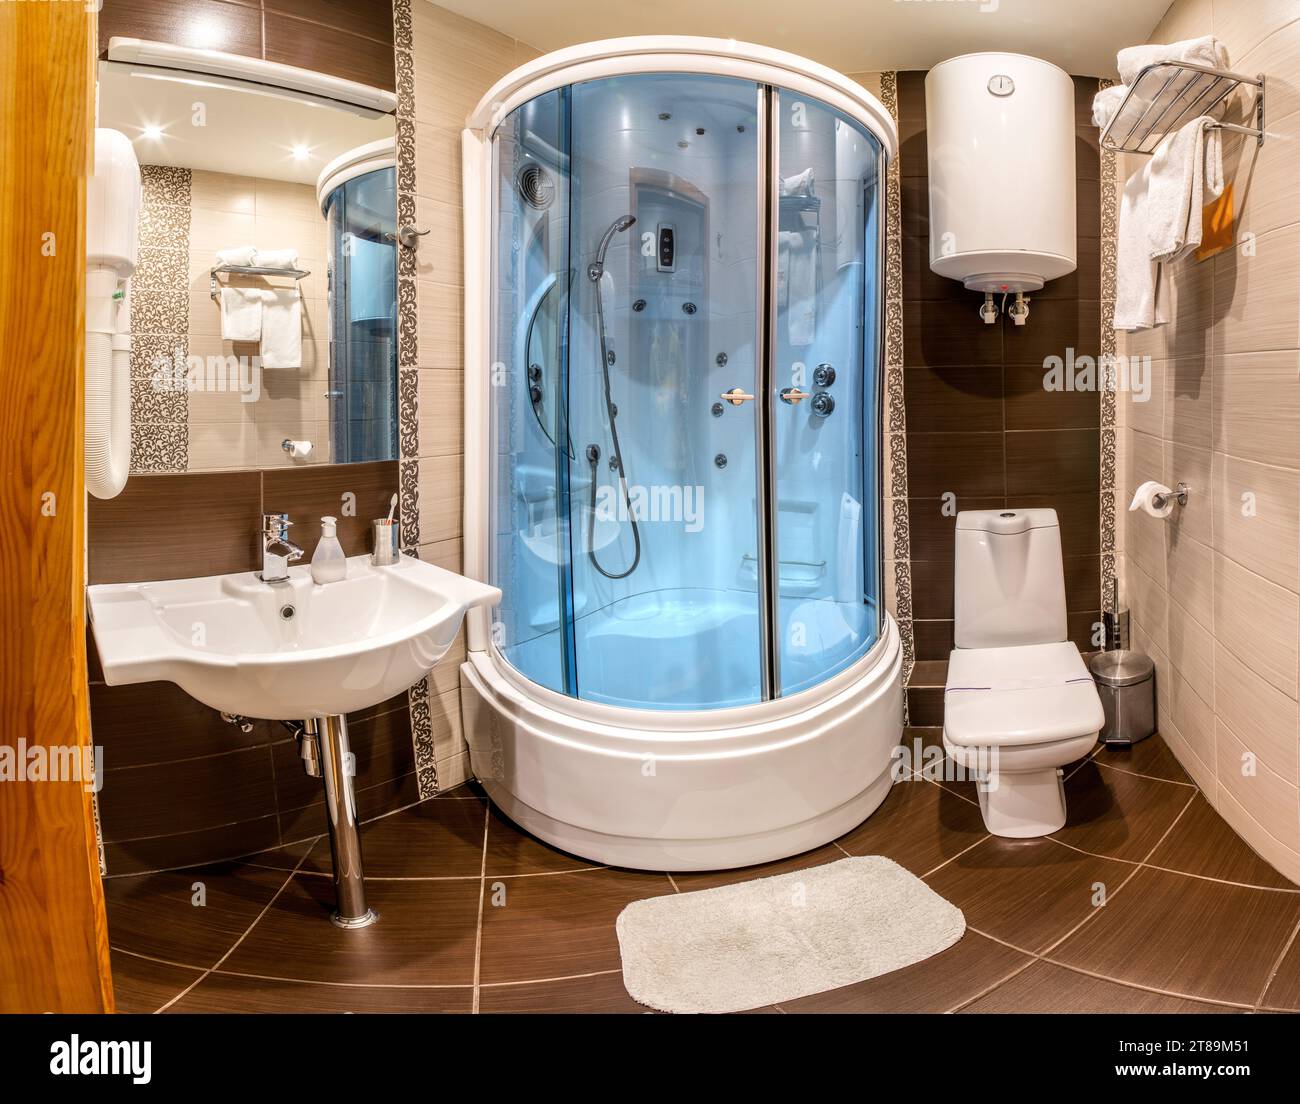 Hotelbadezimmer mit Hydromassage-Duschkabine, Wasserkocher und Spiegel Stockfoto